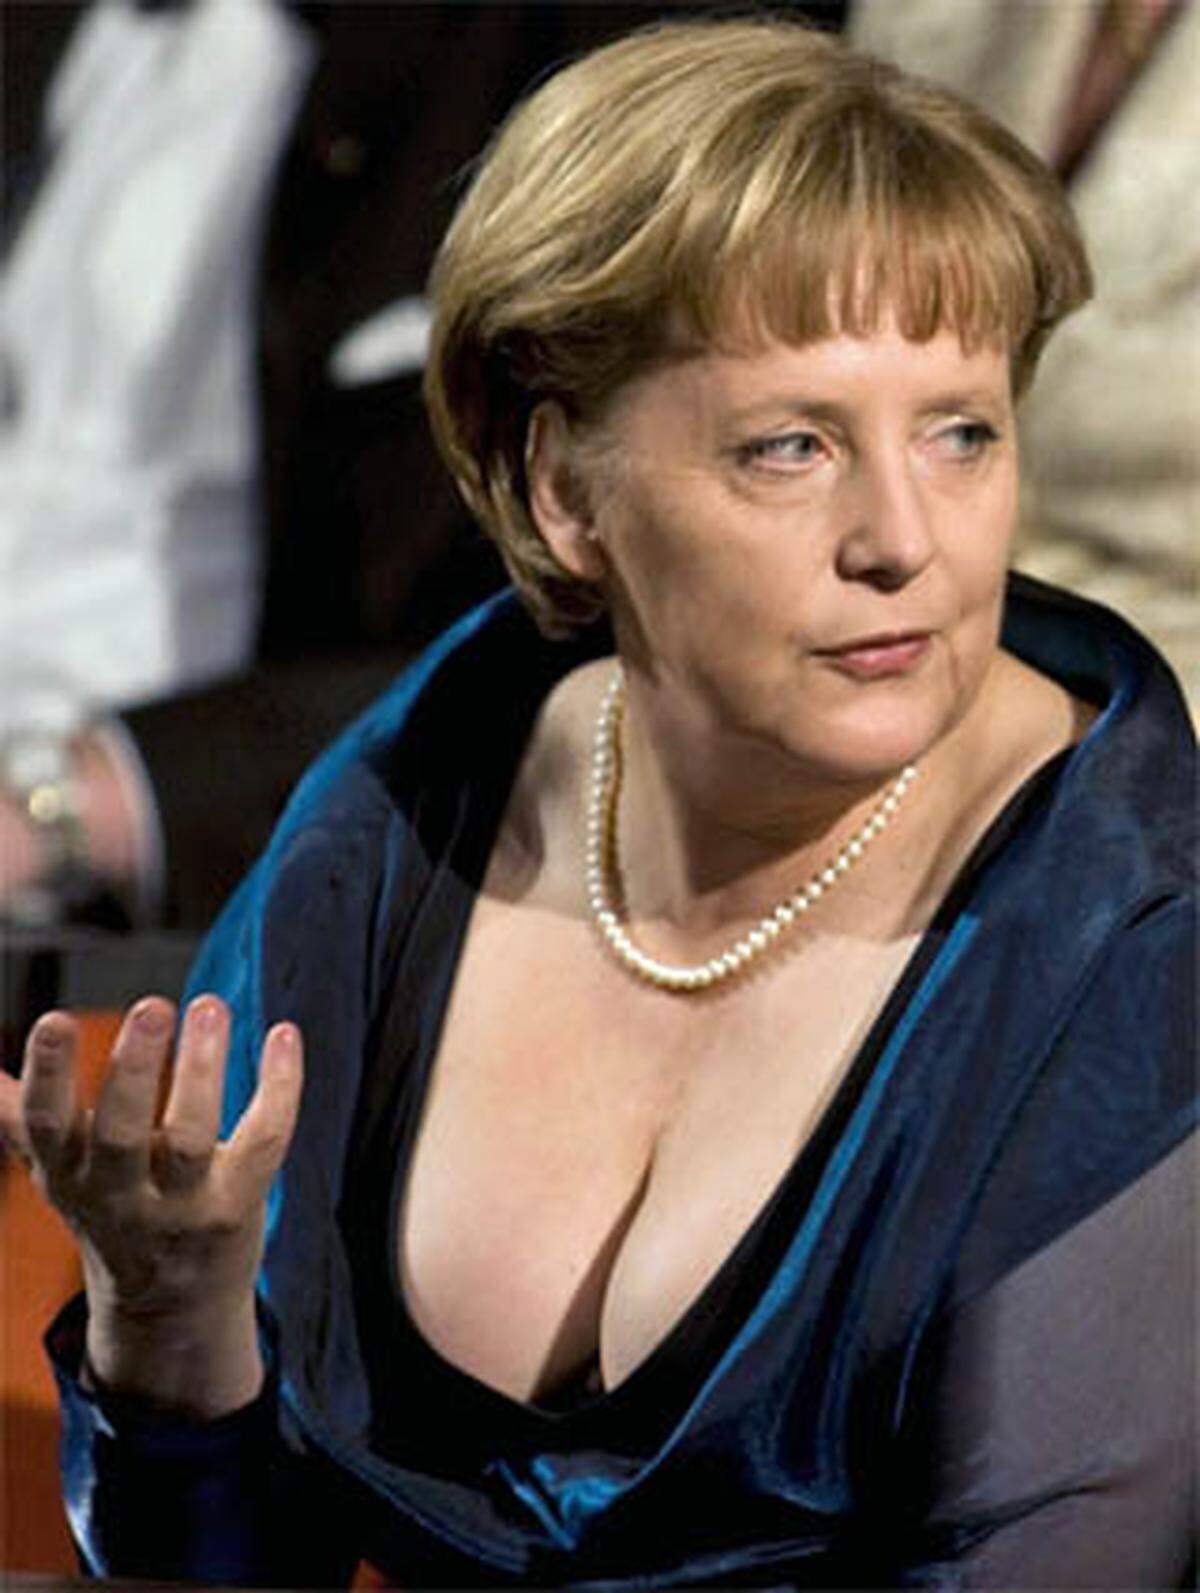 Die deutsche Kanzlerin Angela Merkel gilt vielen als komplett uneitel, doch ihre Medien-Inszenierung ist perfekt: Fotos von der Seite, von unten und beim Gehen werden tunlichst vermieden. Im April sorgte Merkel bei einem Opernbesuch in Oslo mit einem tiefen Ausschnitt für Aufregung.